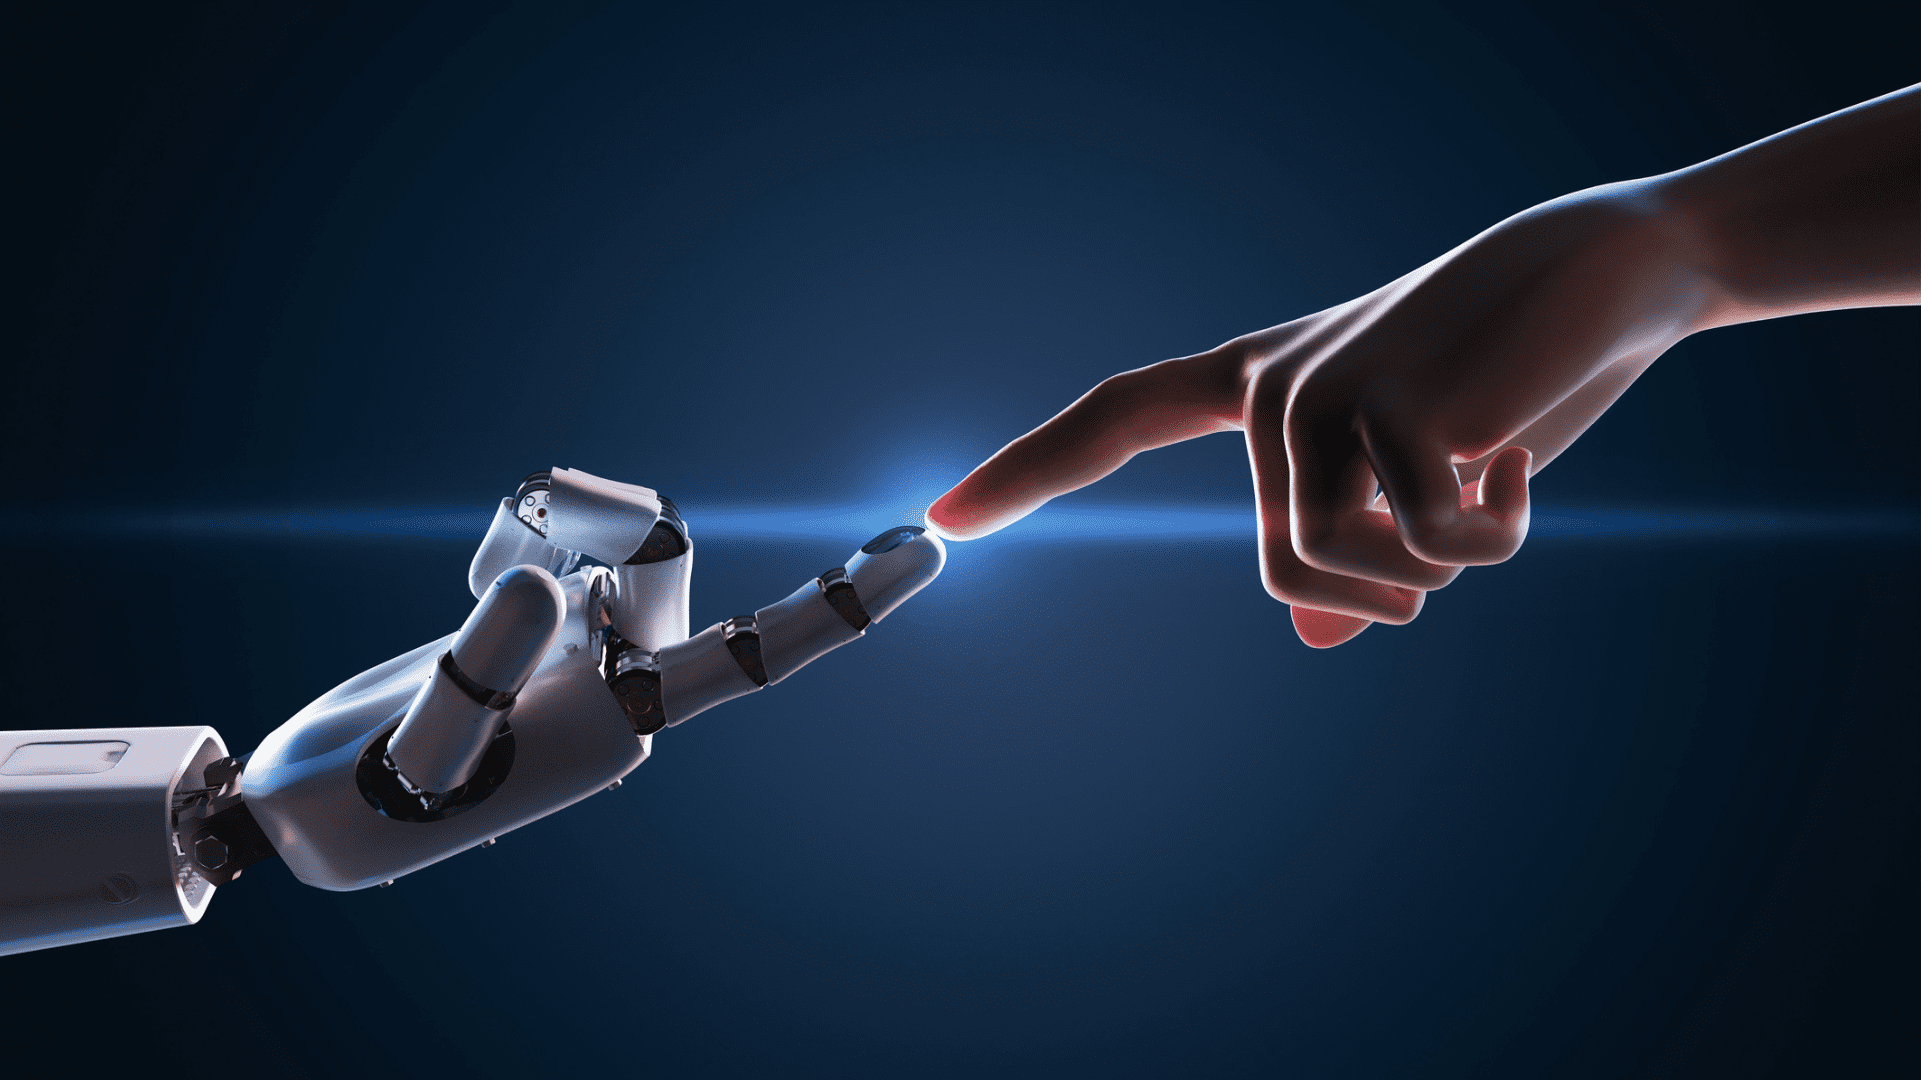 Nesta imagem podemos ver uma mão humana tocando a mão de um robô, simbolizando a inteligência artificial.A inteligência artificial no marketing pode ser utilizada para te auxiliar a alcançar seus objetivos corporativos.